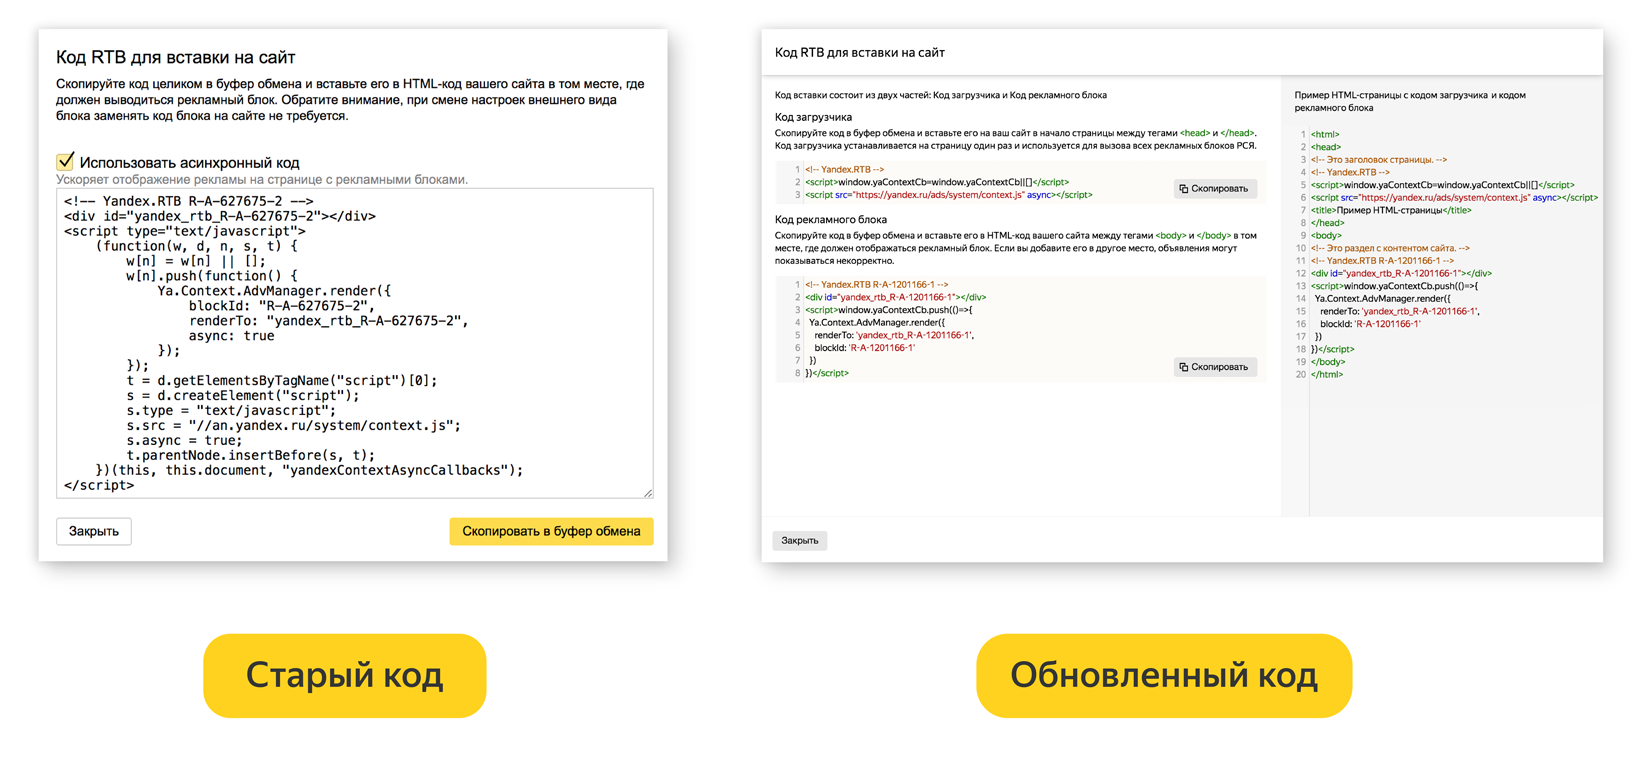 Яндекс обновил коды вставки рекламных блоков в РСЯ и ADFOX